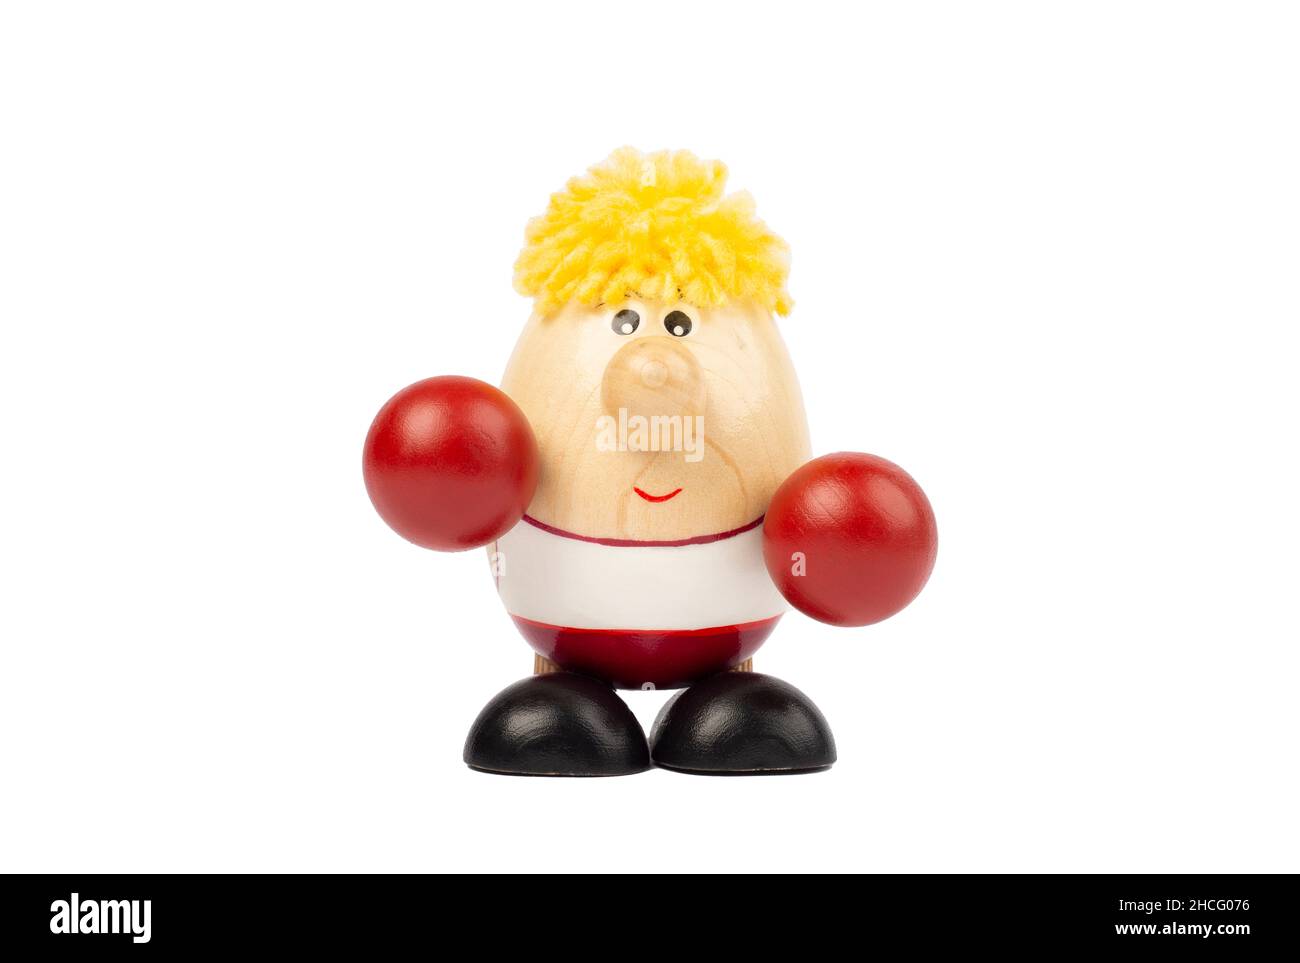 Bambola in legno a forma di uovo con guanti da boxer rossi. Foto Stock